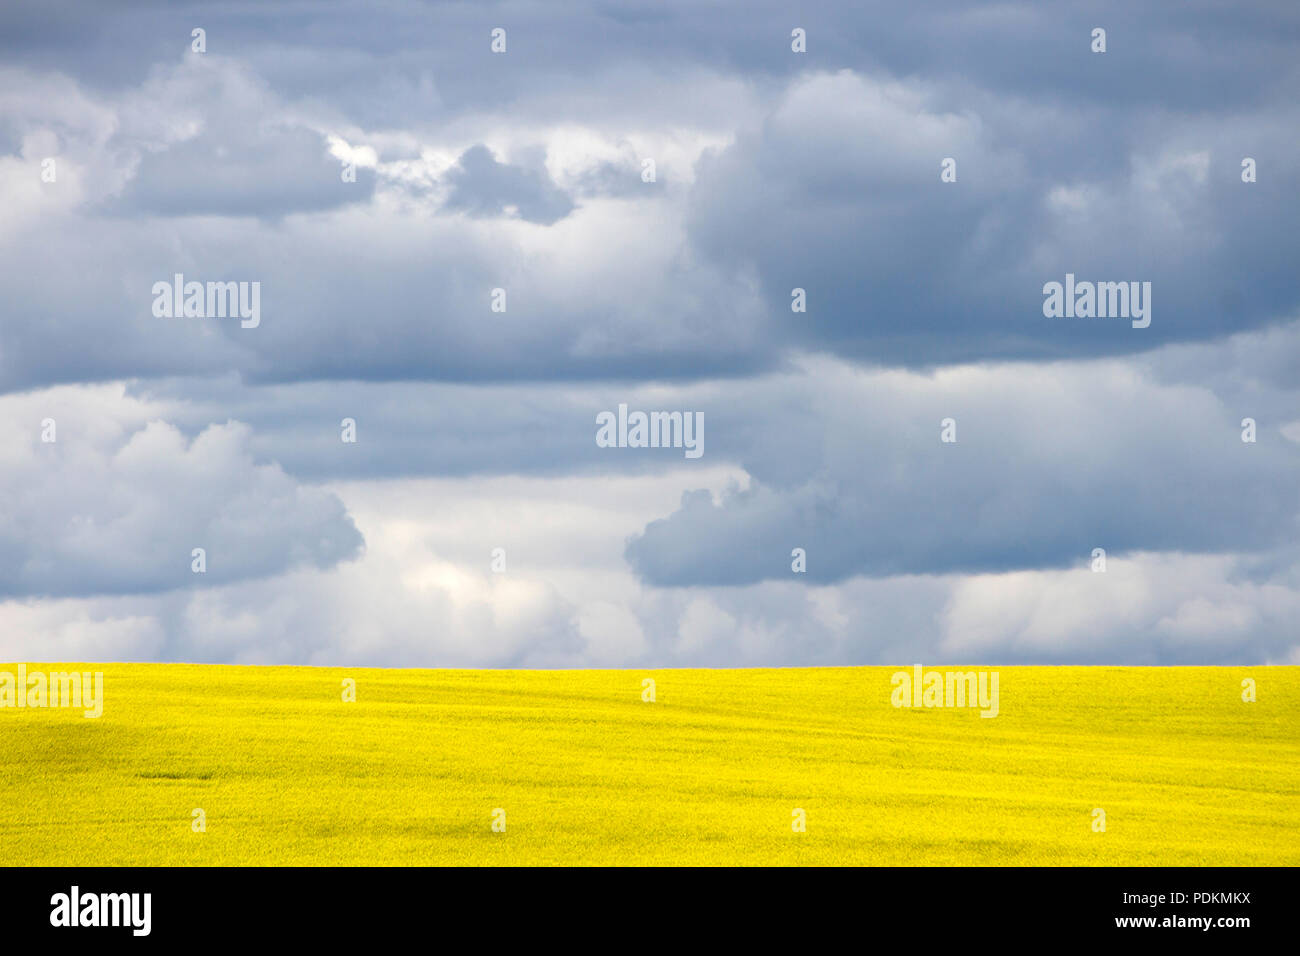 Champ de colza en fleur jaune avec ciel dramatique nuages dans la prairie canadienne près de Pincher Creek, en Alberta, Canada. Banque D'Images